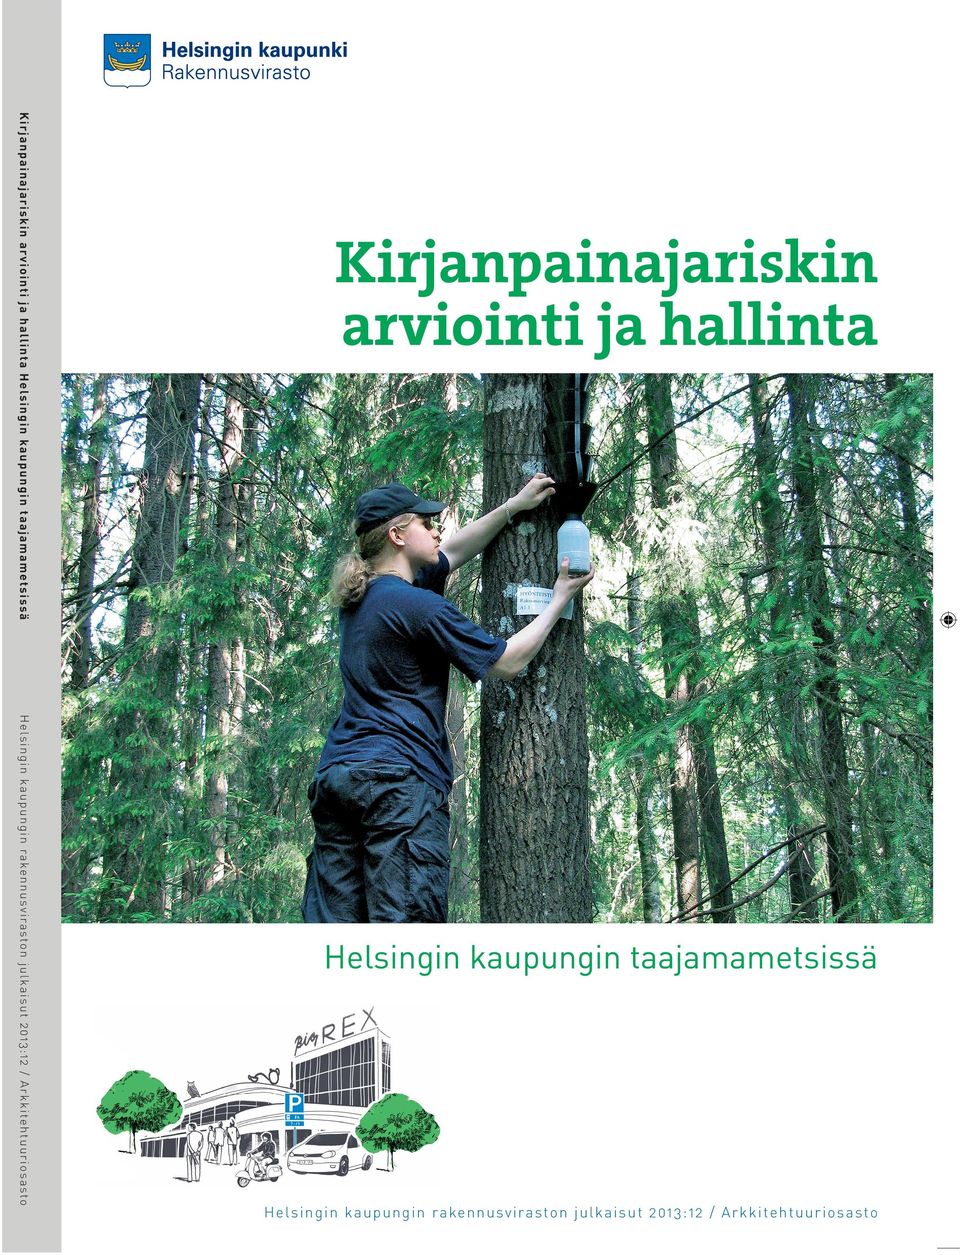 uudistaminen ja täydennysistuttaminen ISBN 978-952-272-399-4 (painettu versio), ISBN 978-952-272-400-7 (verkkoversio) Helsingin kaupungin rakennusviraston julkaisut 2013:3 / Arkkitehtuuriosasto